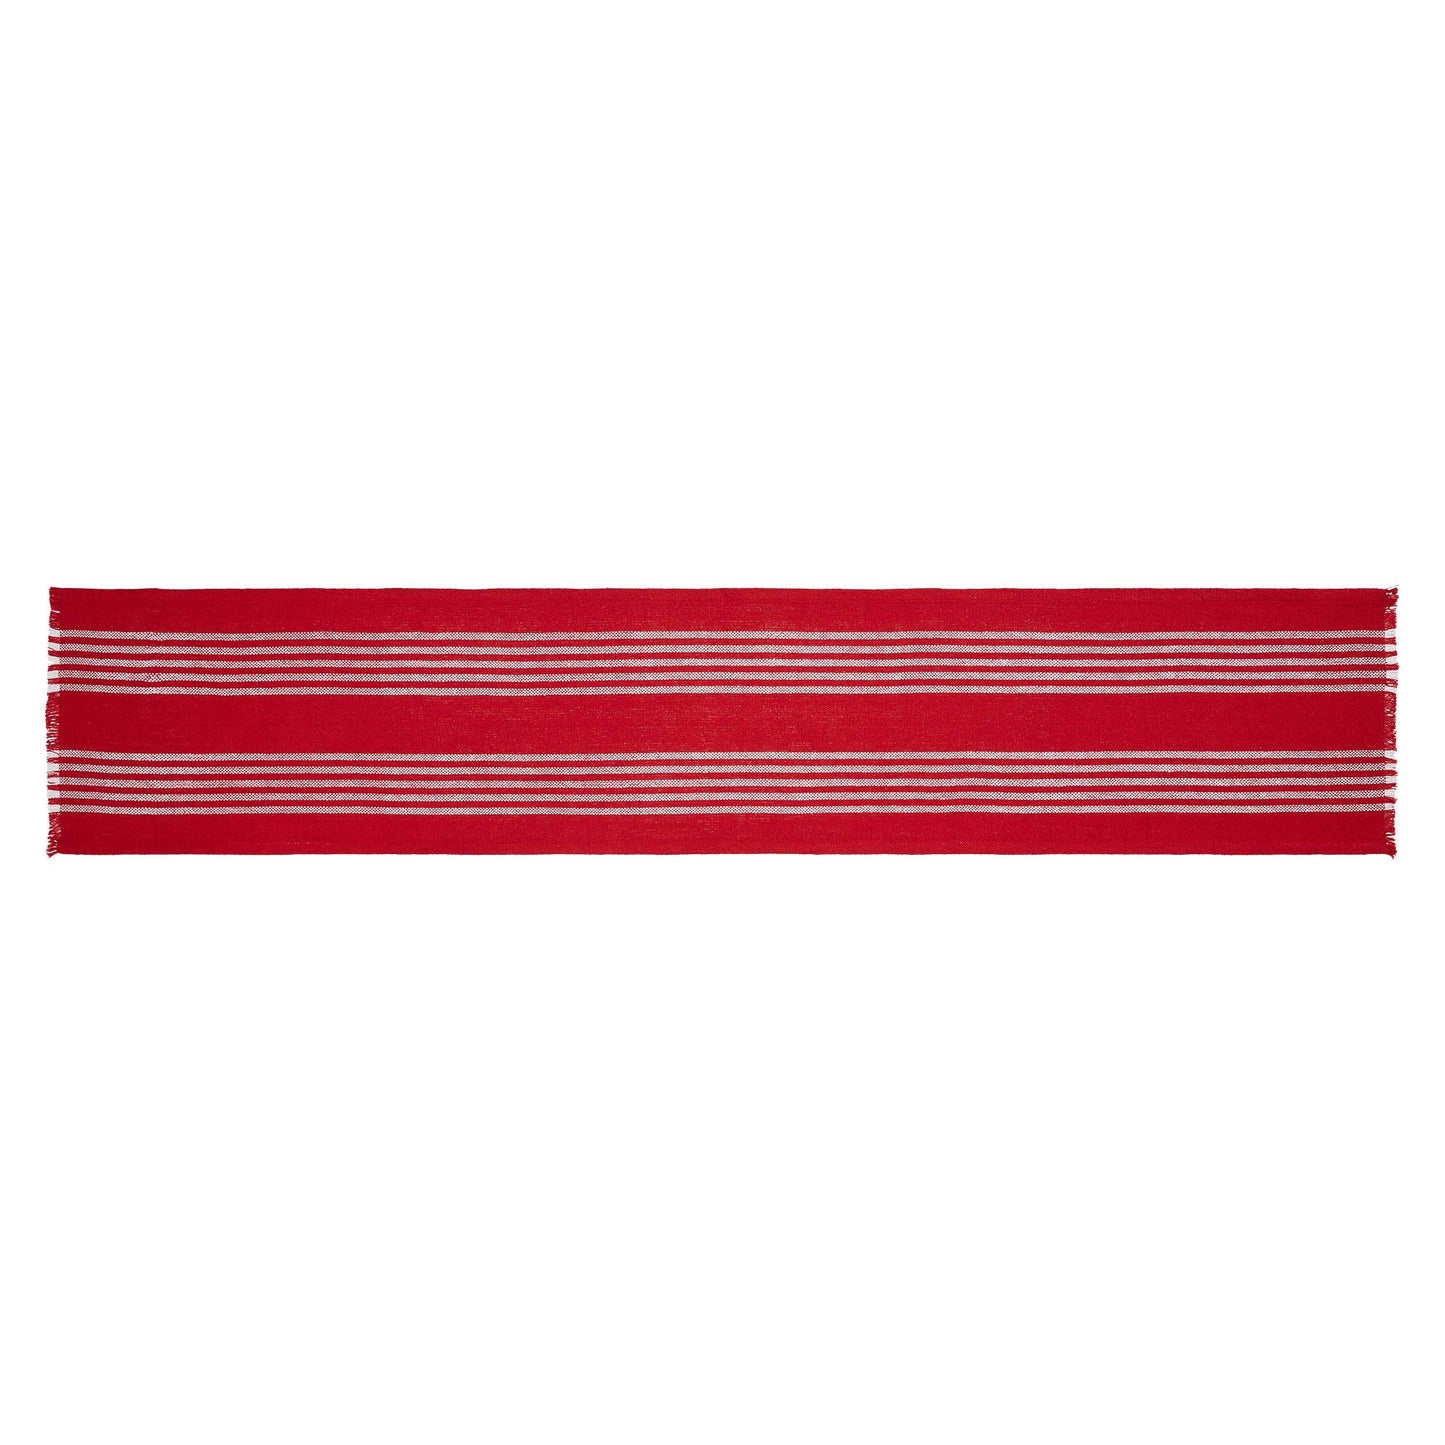 Arendal Red Stripe Runner Fringed 12"x60"